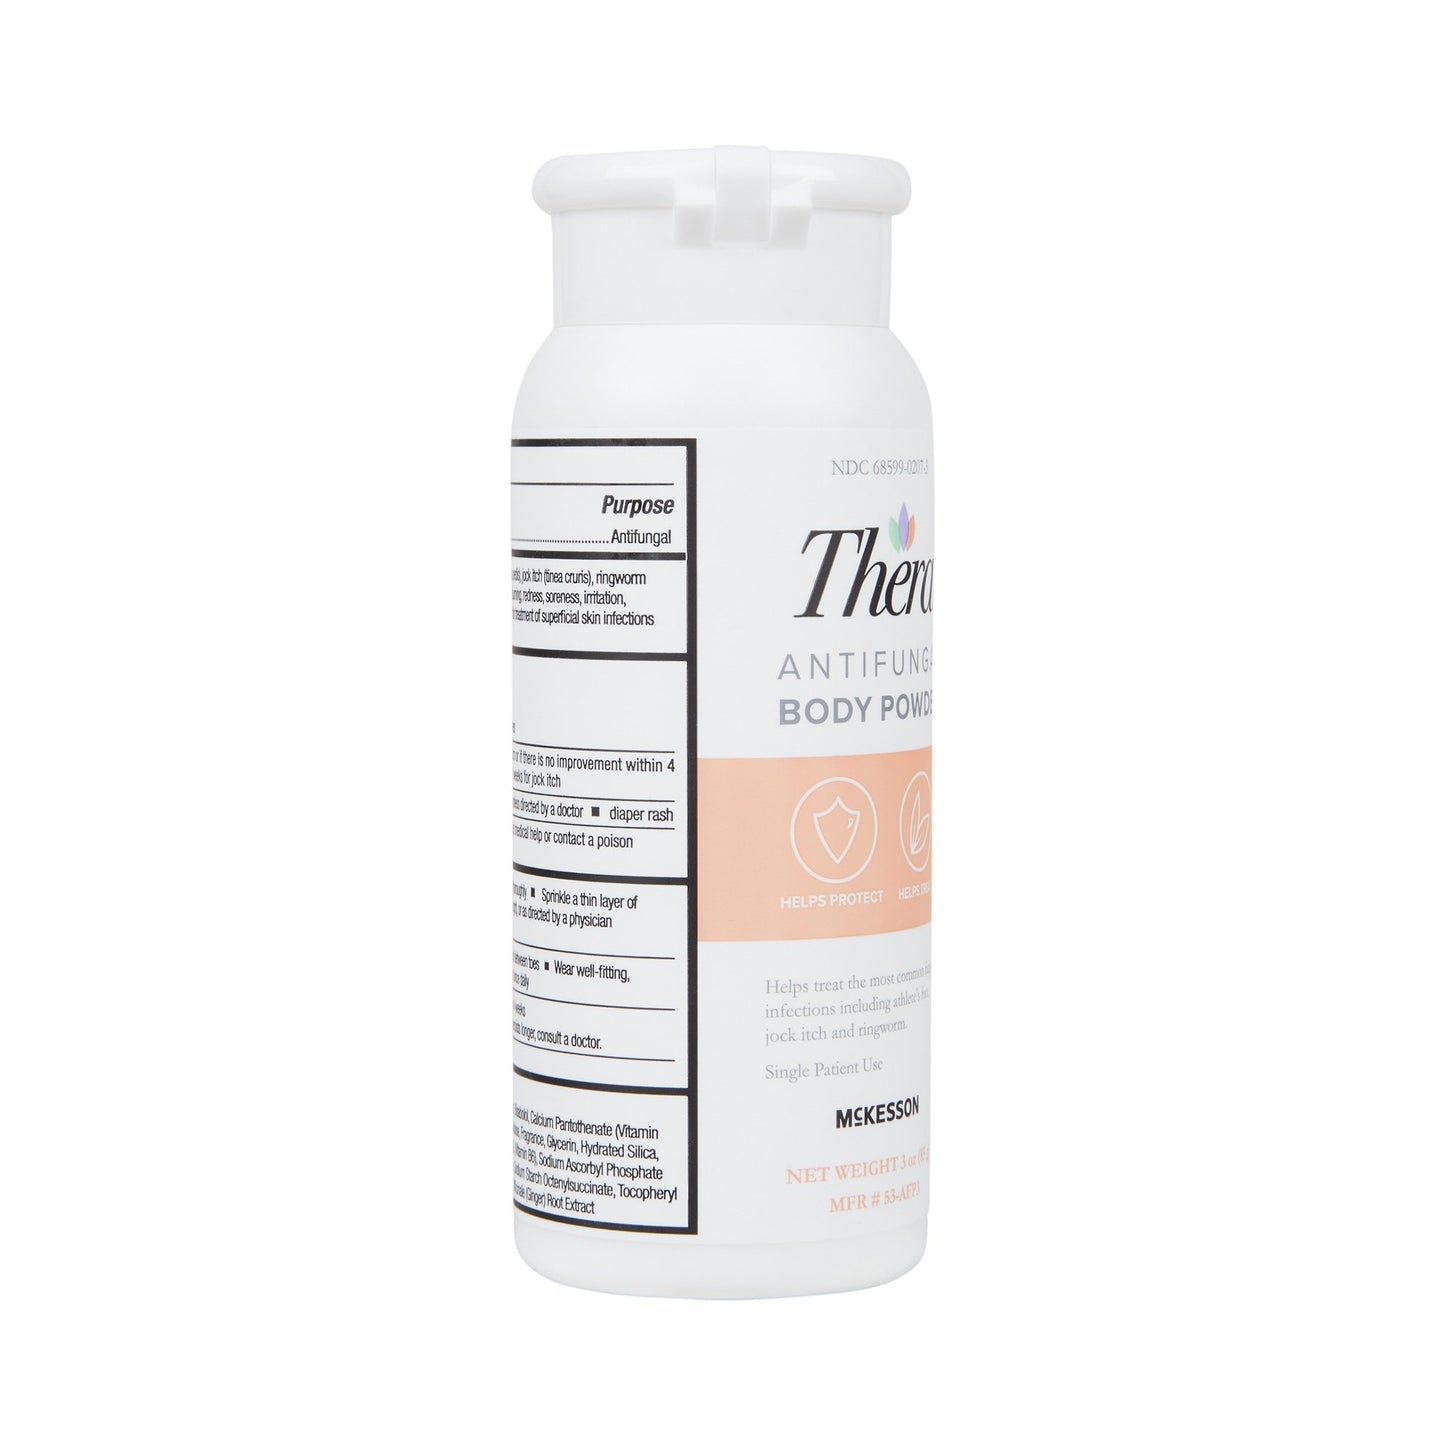 Thera Miconazole Nitrate 2% Antifungal Body Powder, 3 oz.